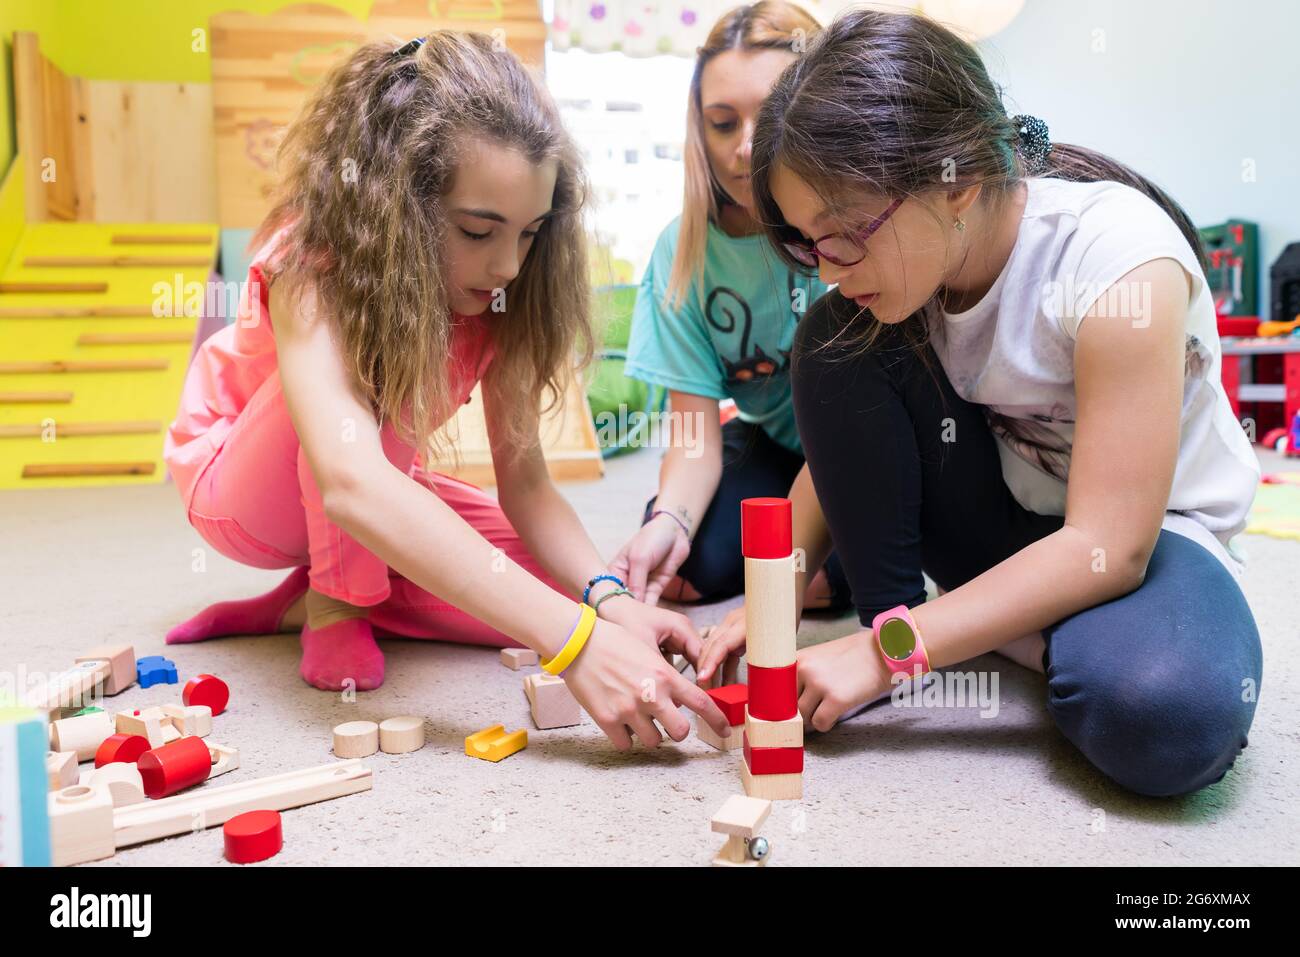 Zwei Pre-school Mädchen zusammen spielen mit Holzspielzeug Bausteine auf dem Boden während der Spielzeit betreut durch eine sorgfältige junge Kindergärtnerin Stockfoto